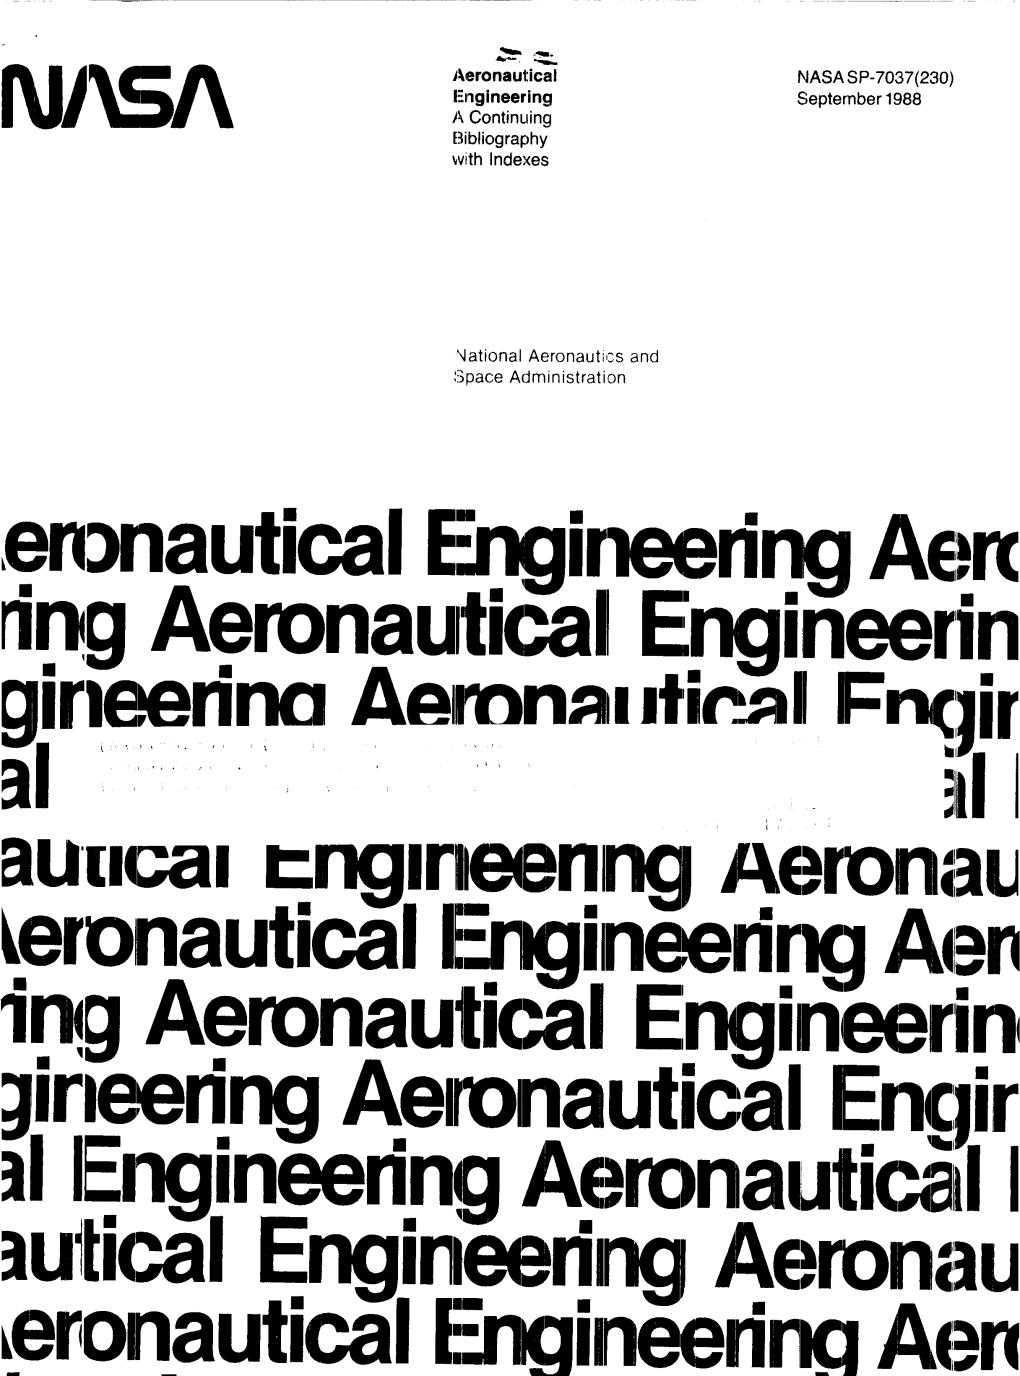 September 1988 National Aeronautics and Spac